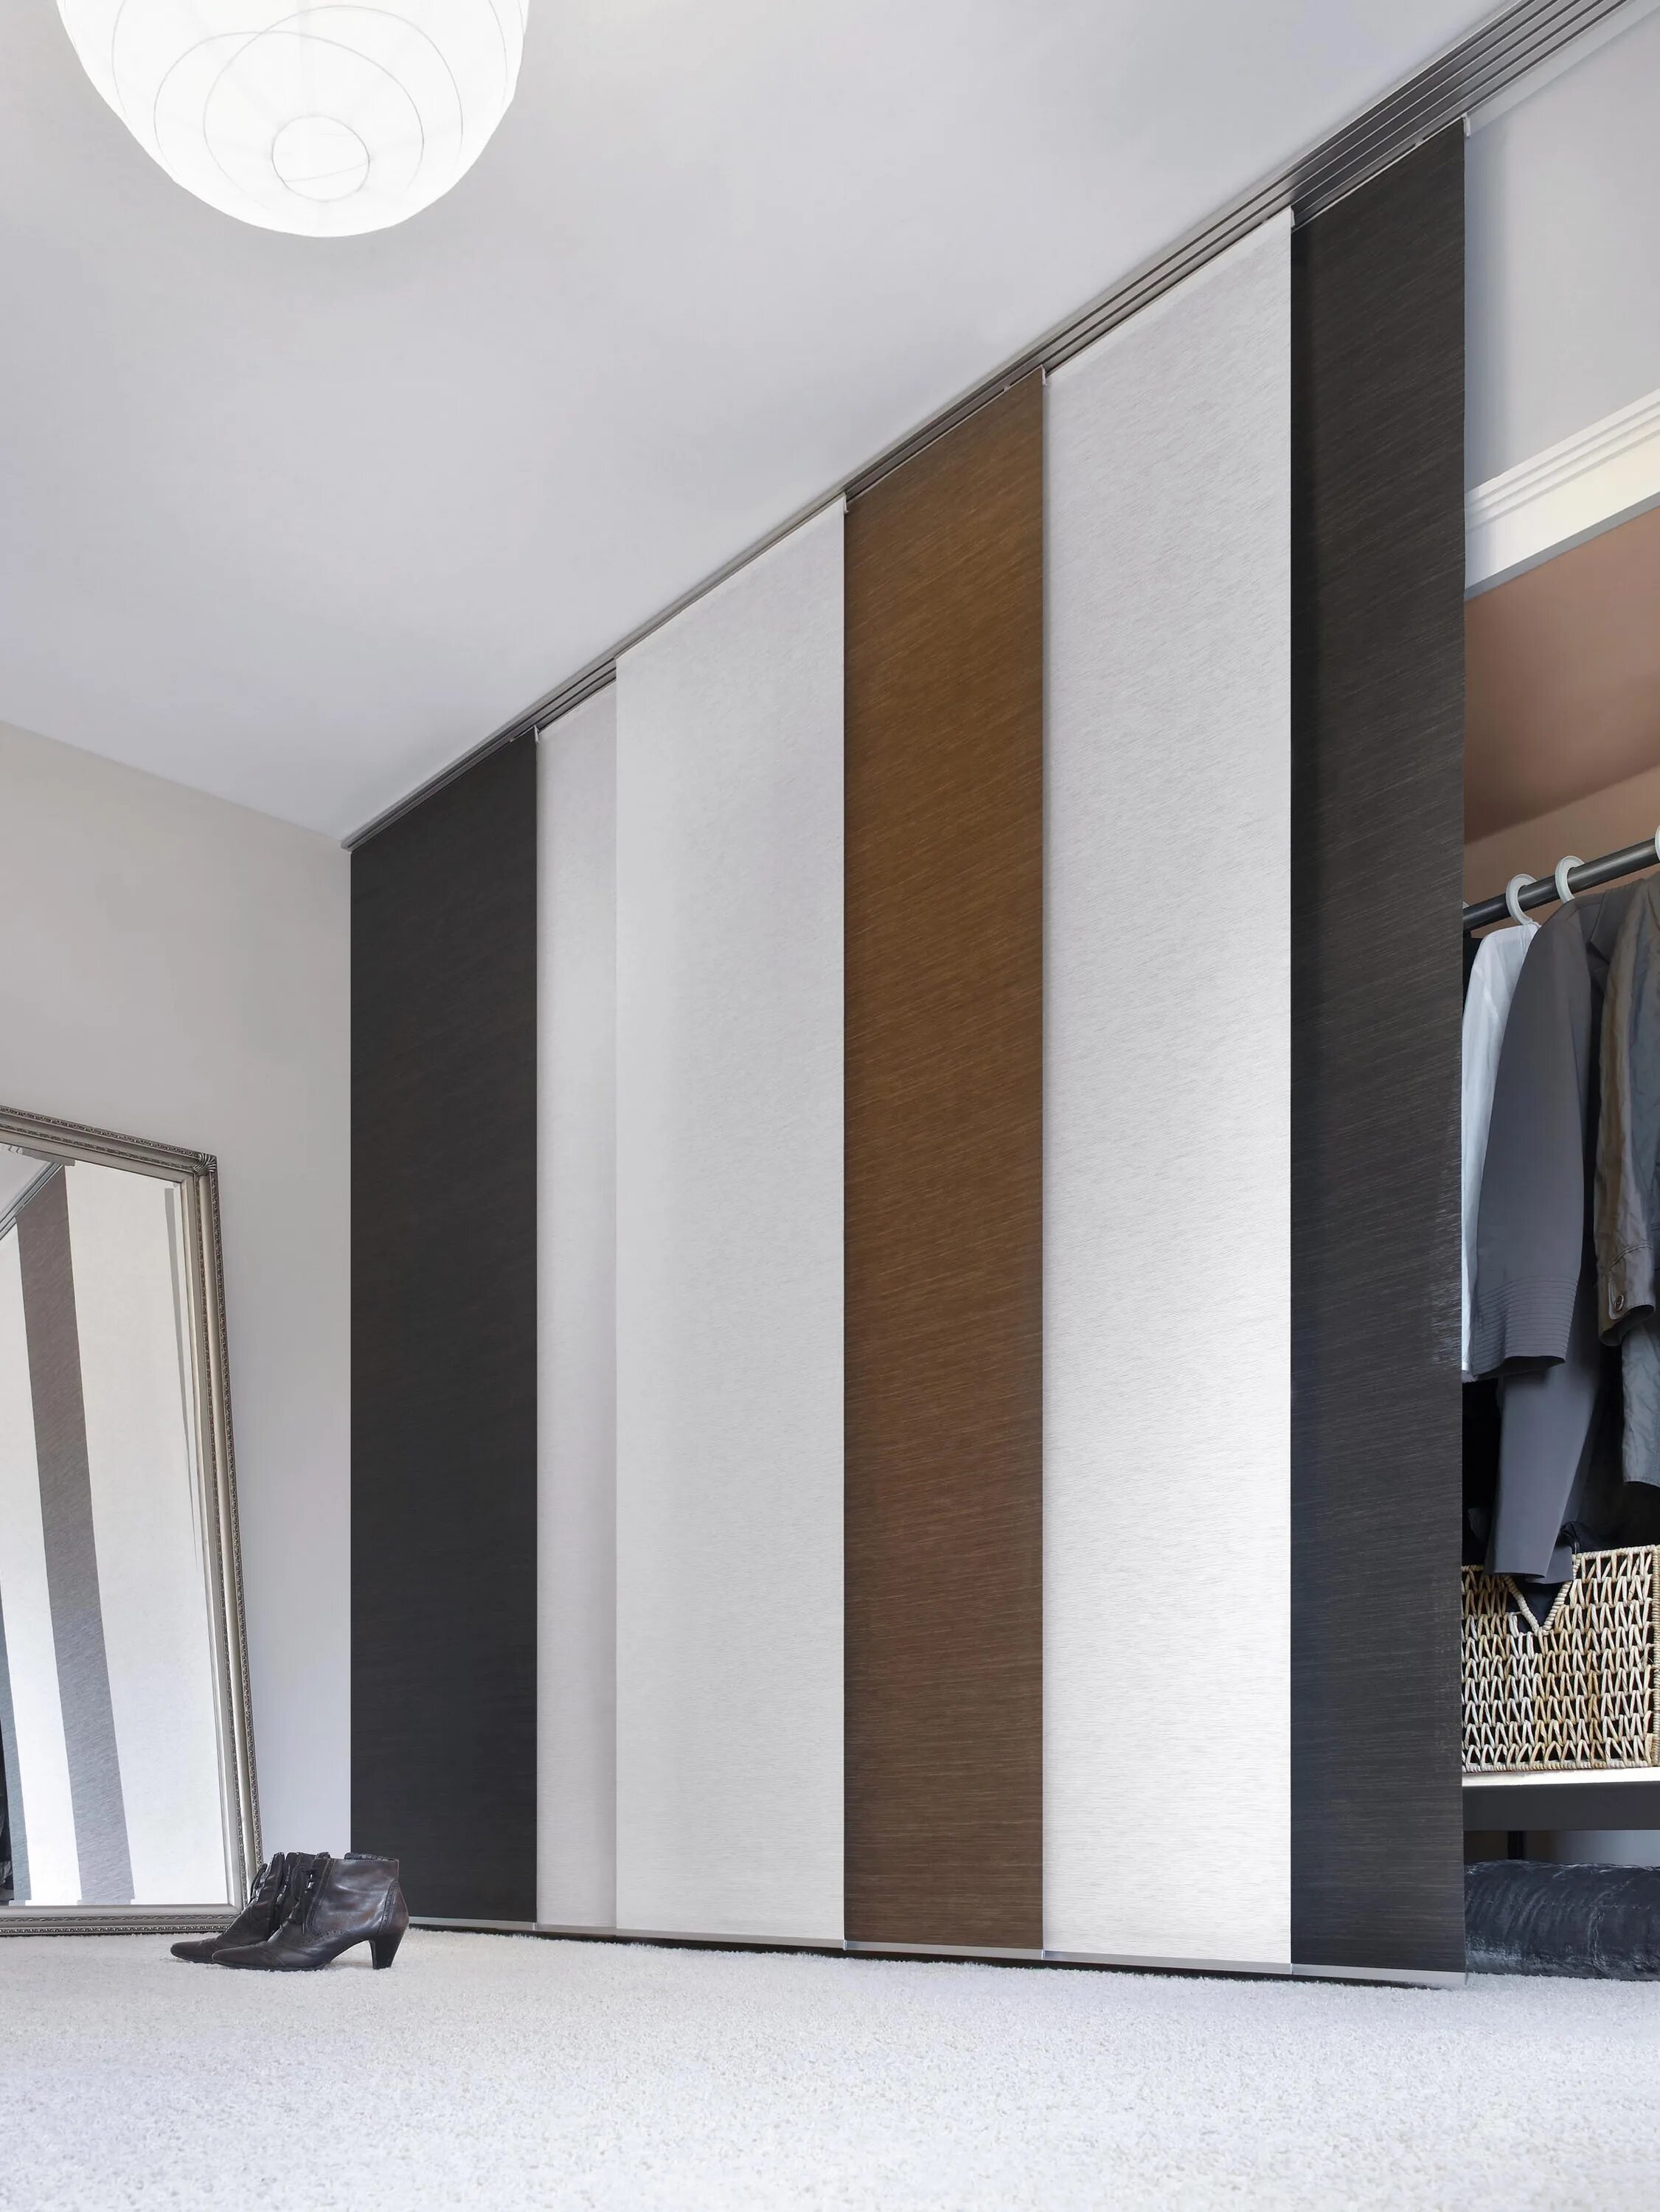 Шторка для шкафа. Sliding-Curtain-Panel шкаф. Японские шторы в гардеробную. Японские шторы перегородки. Панельные (японские)шторы-перегородки.